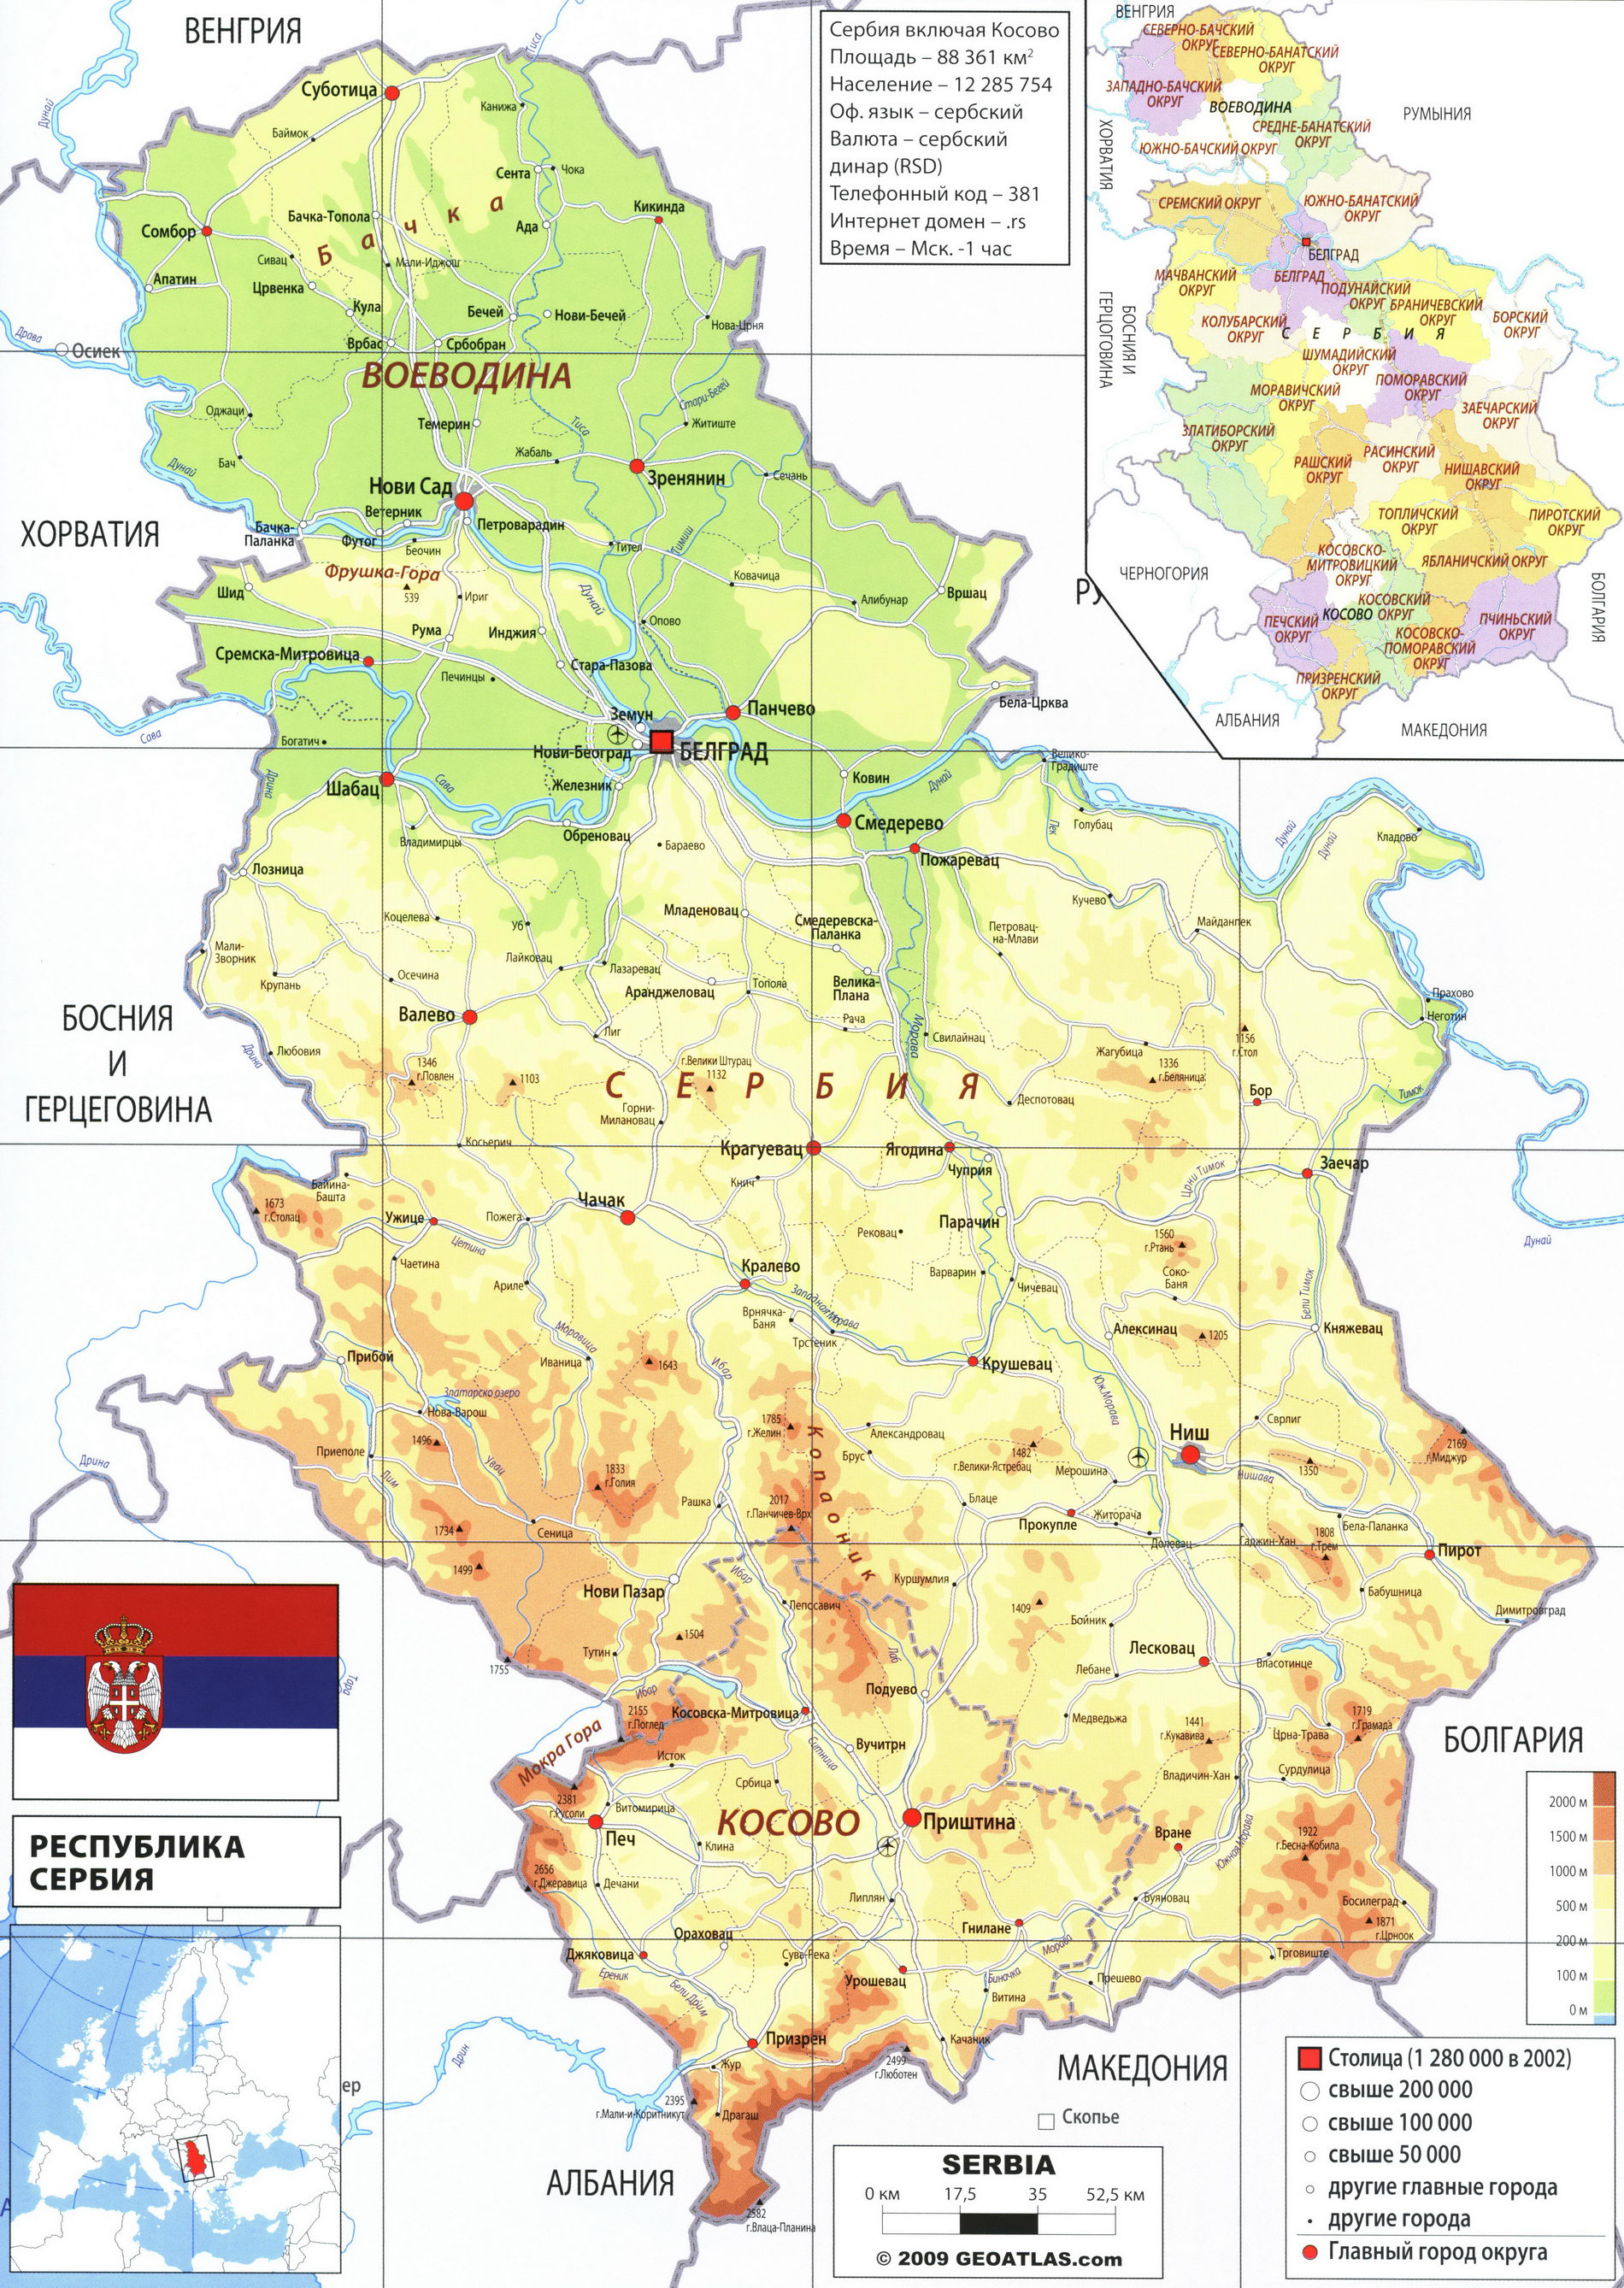 Сербия карта на русском языке, география описание страны - Атлас мира